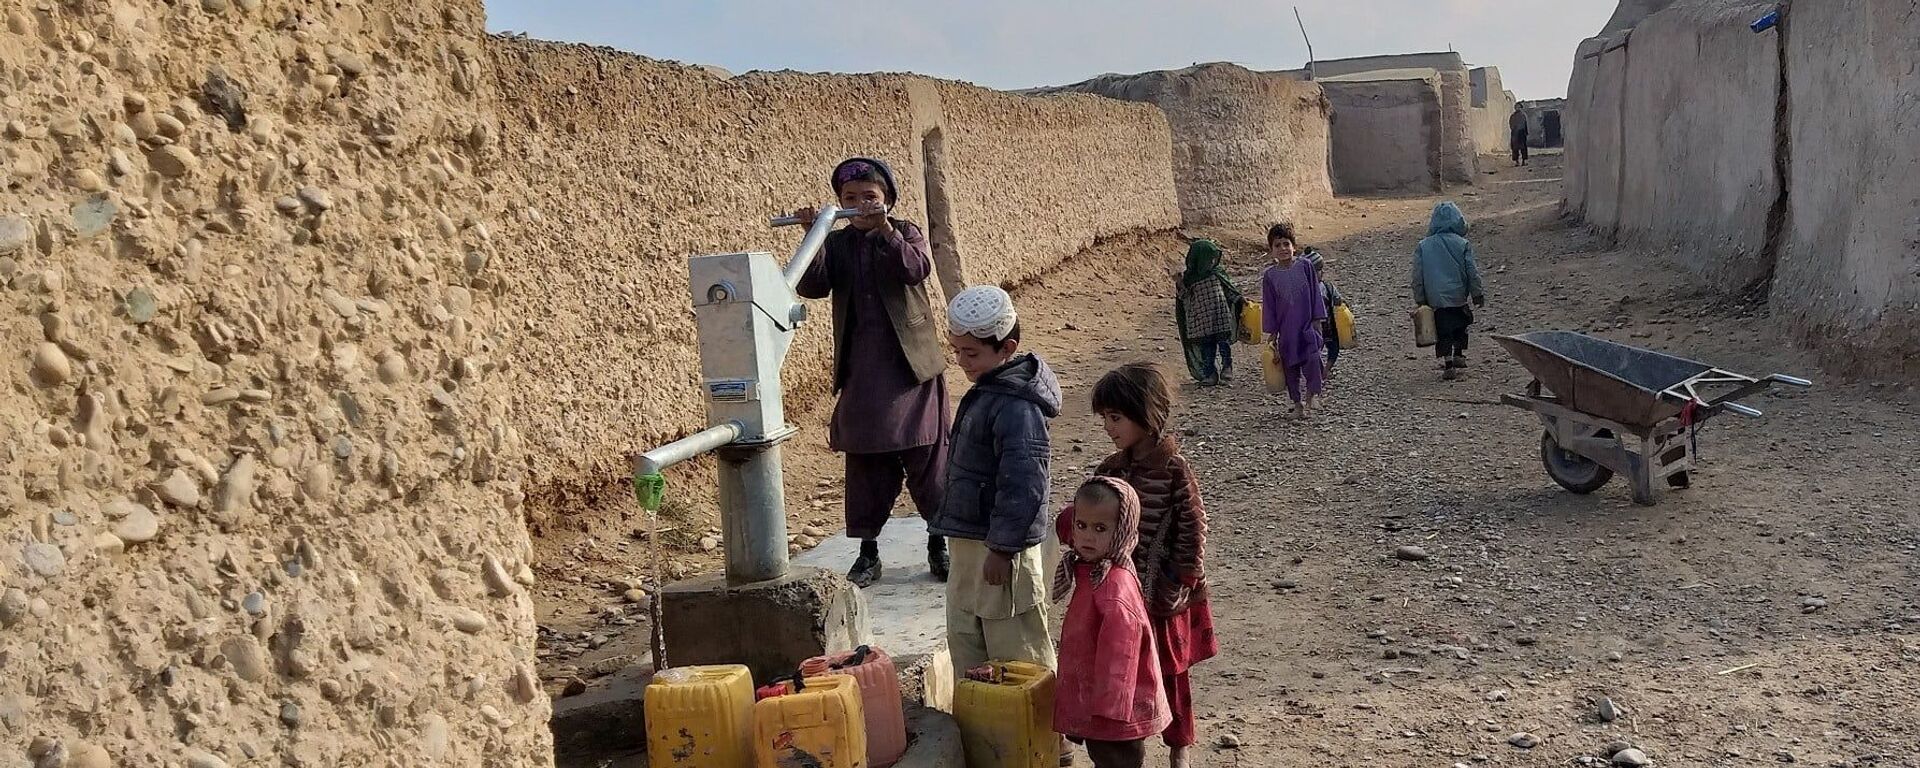 خشکسالی و خطر کمبود غذا؛ چالش تازه برای دولت افغانستان - اسپوتنیک افغانستان  , 1920, 23.04.2021